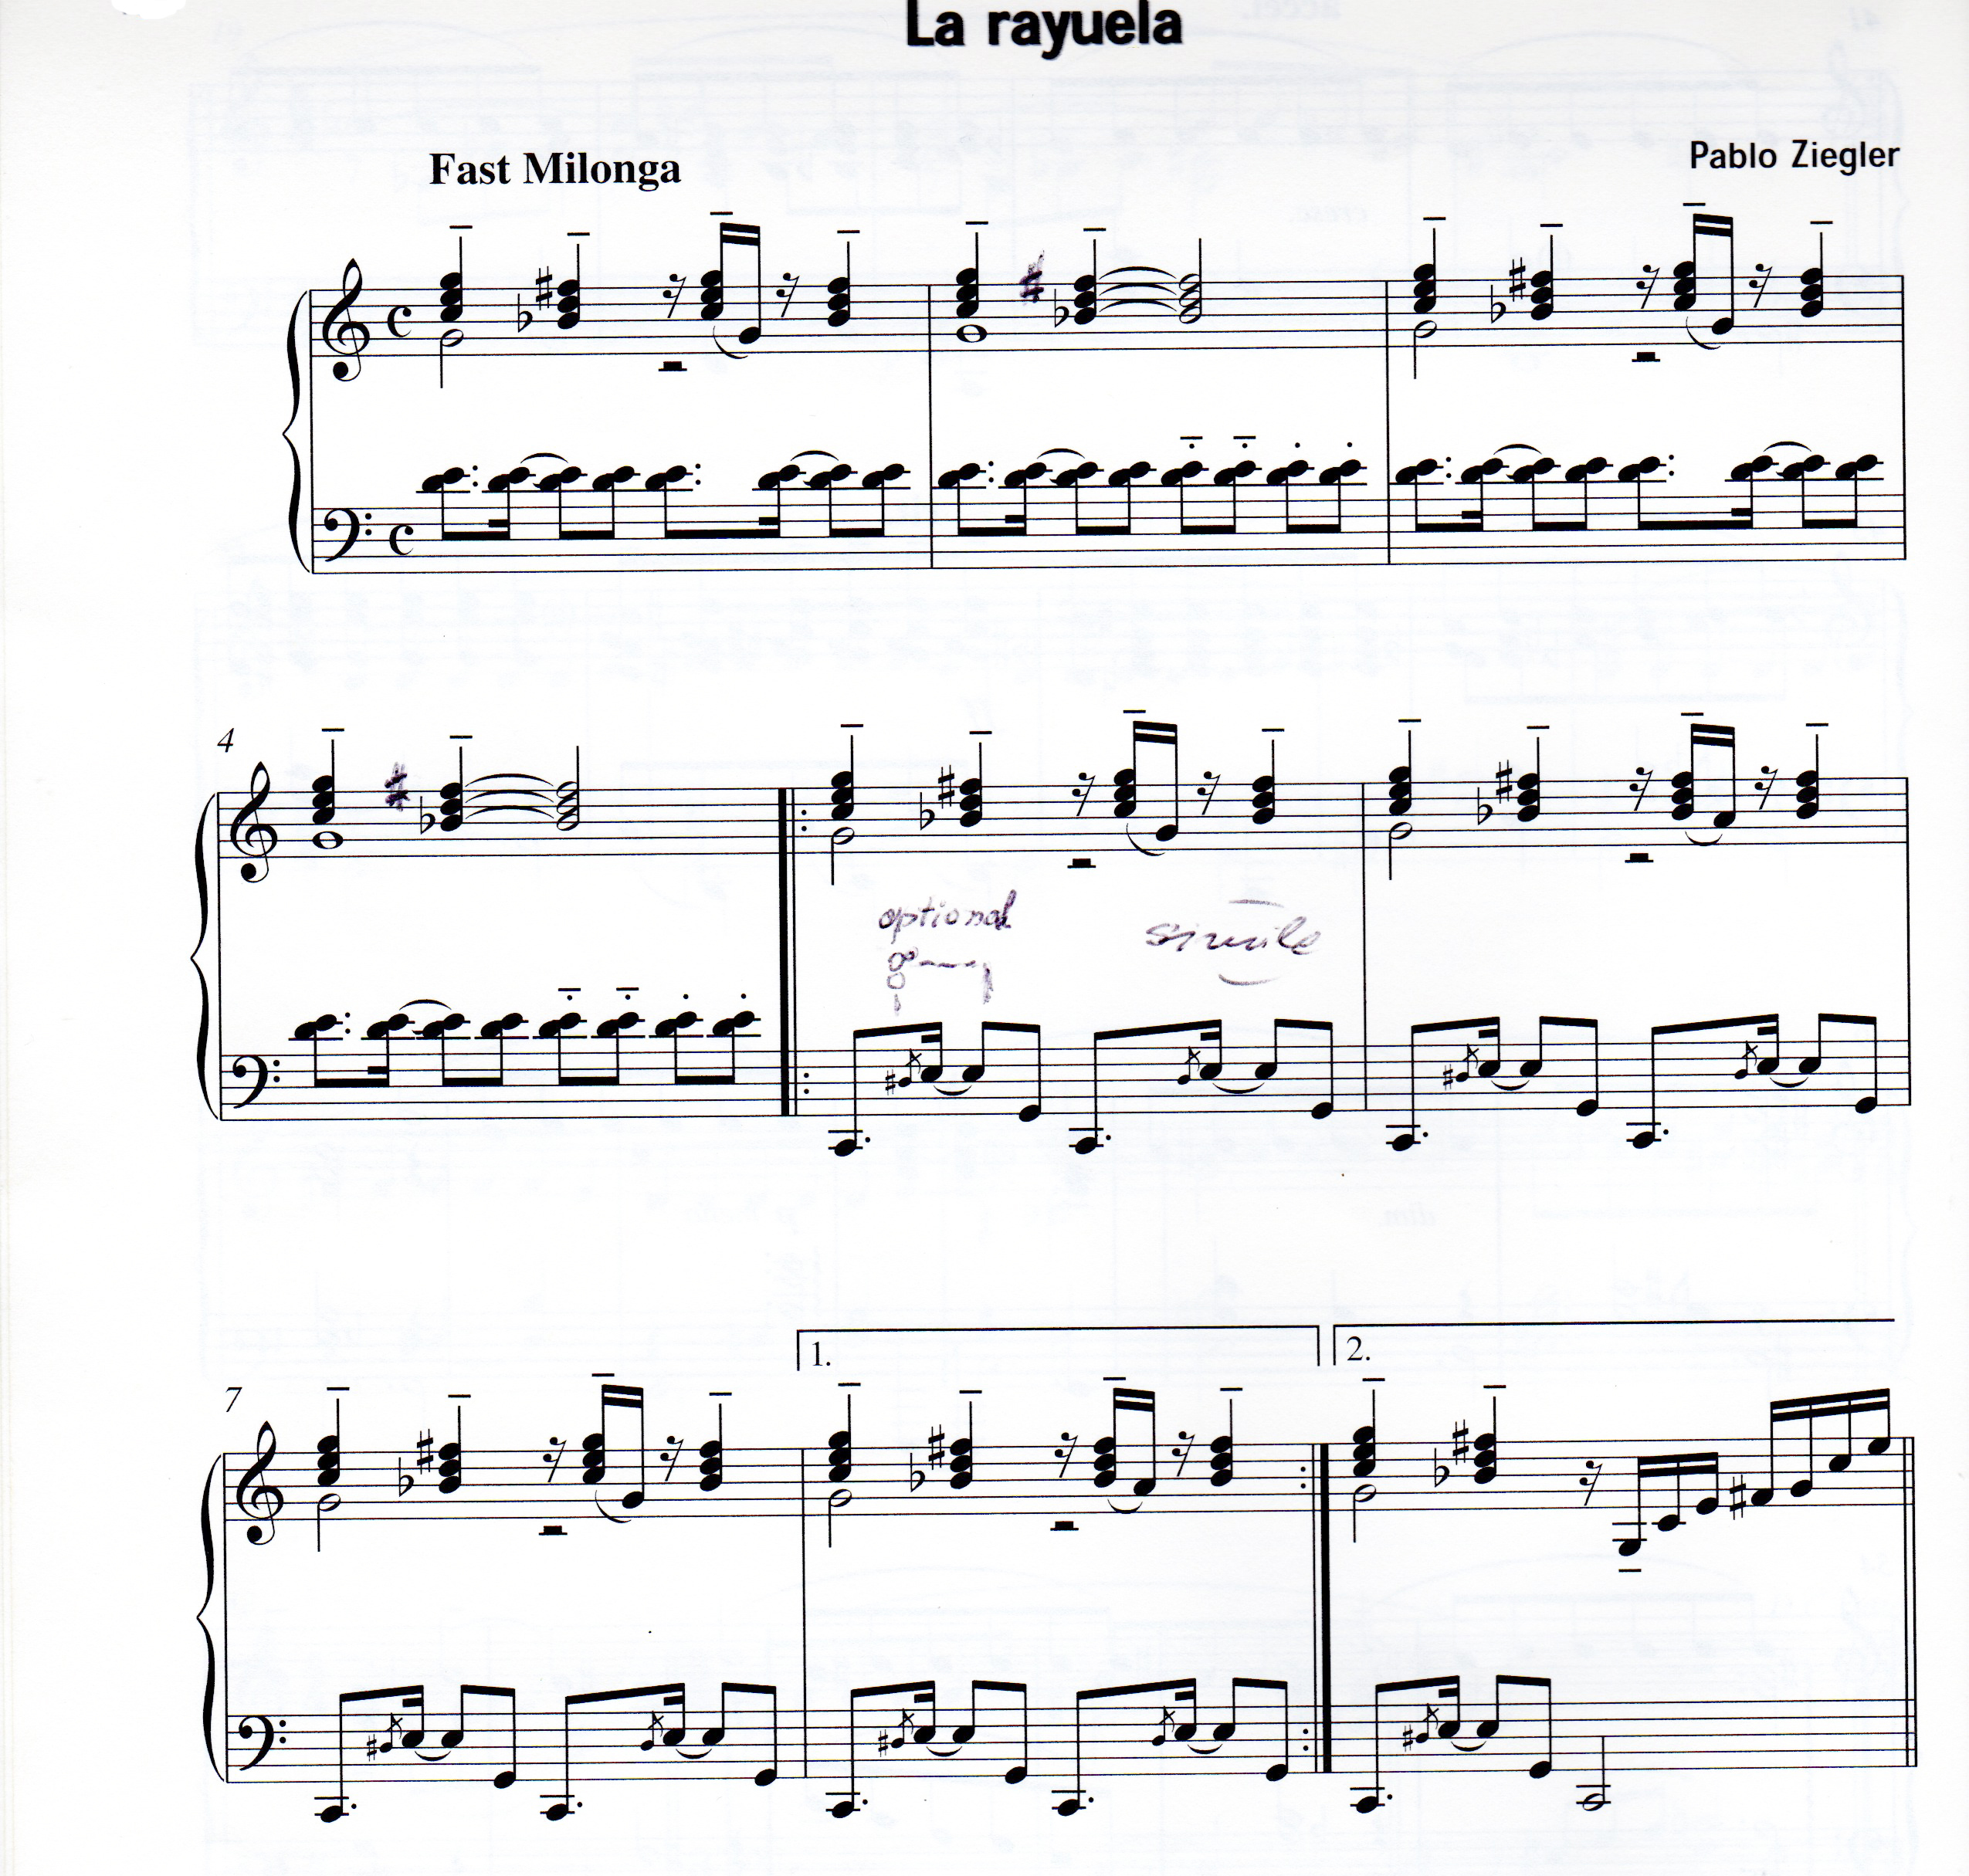 Excerpted piano score of Ziegler's La Rayuela width=